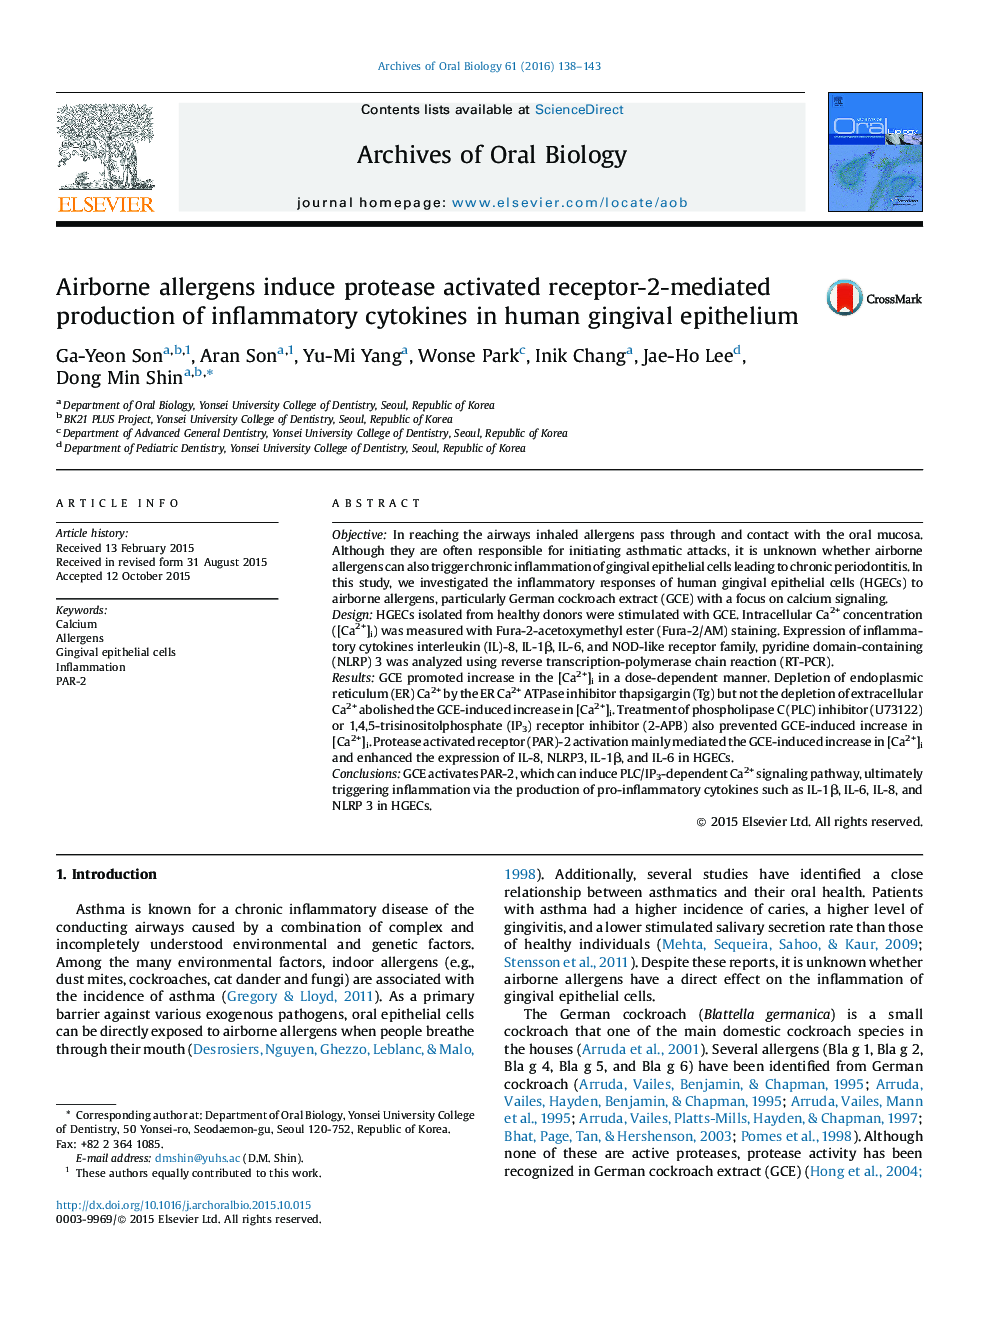 آلرژن های هوای آلوده باعث تولید پروتئاز فعال گیرنده -2 توسط سیتوکین های التهابی در اپیتلیوم لثه انسانی 